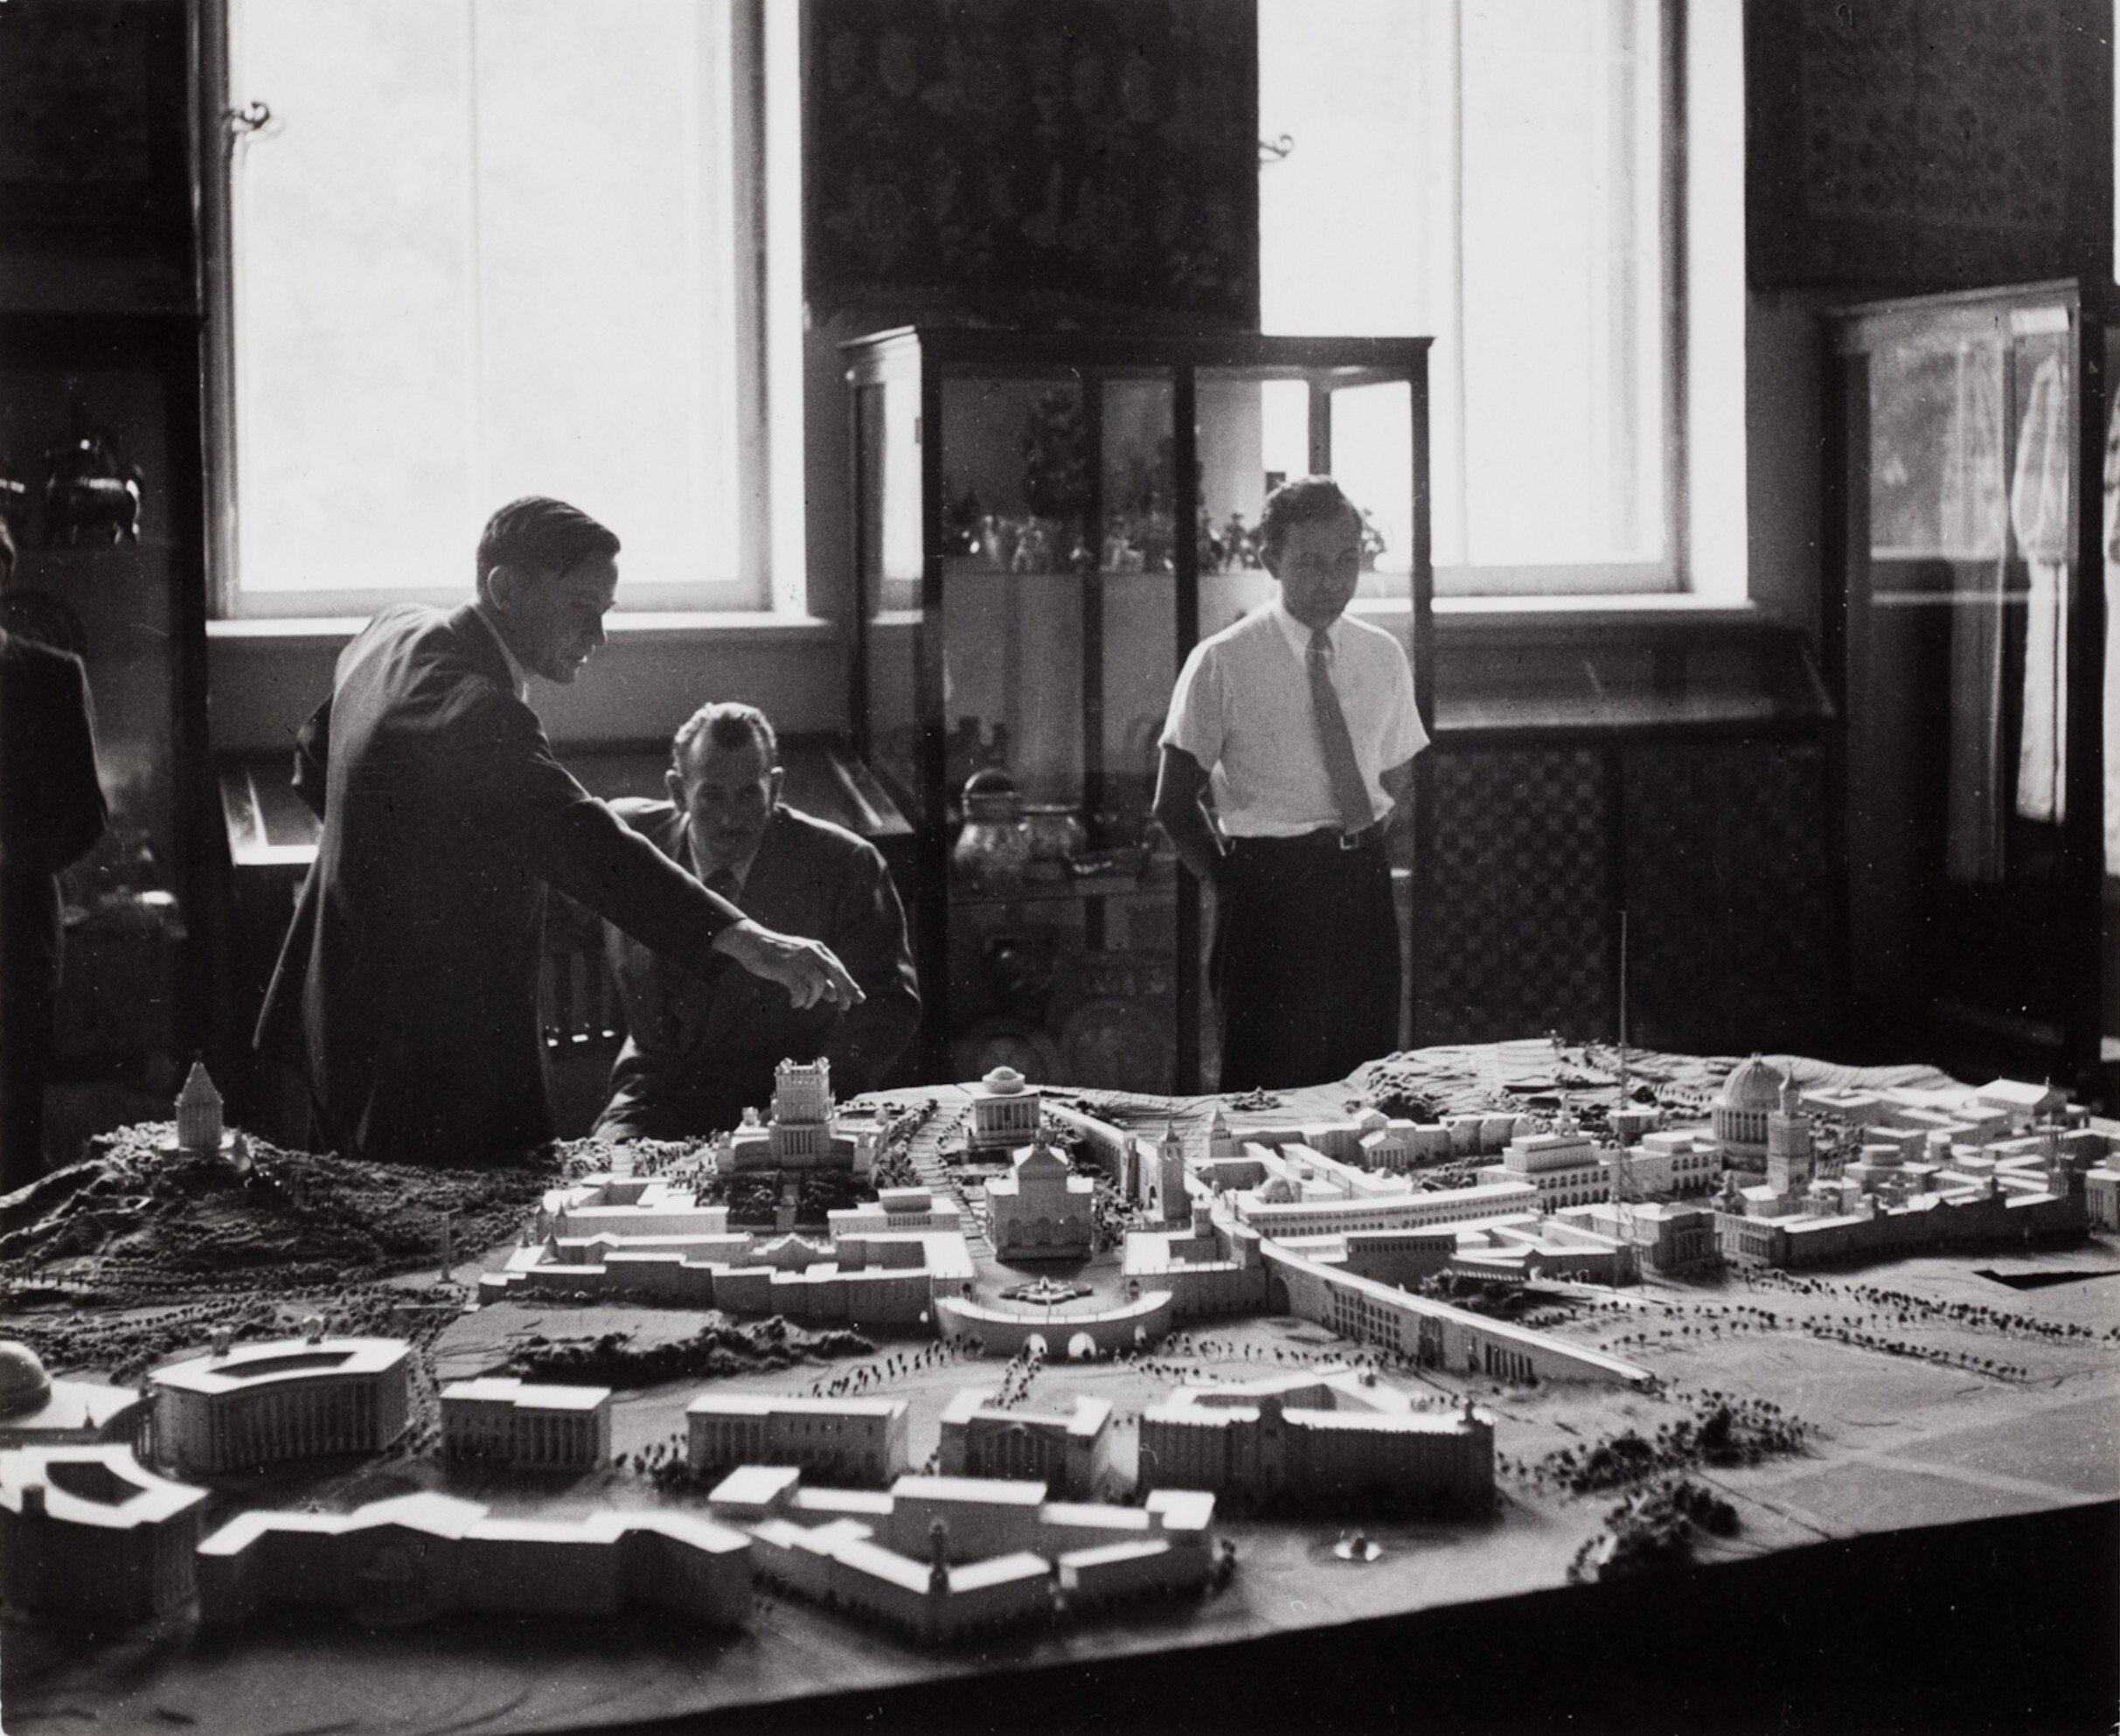 Архитекторы показывают макет планов перестройки Киева, 1947 год. Фотограф Роберт Капа